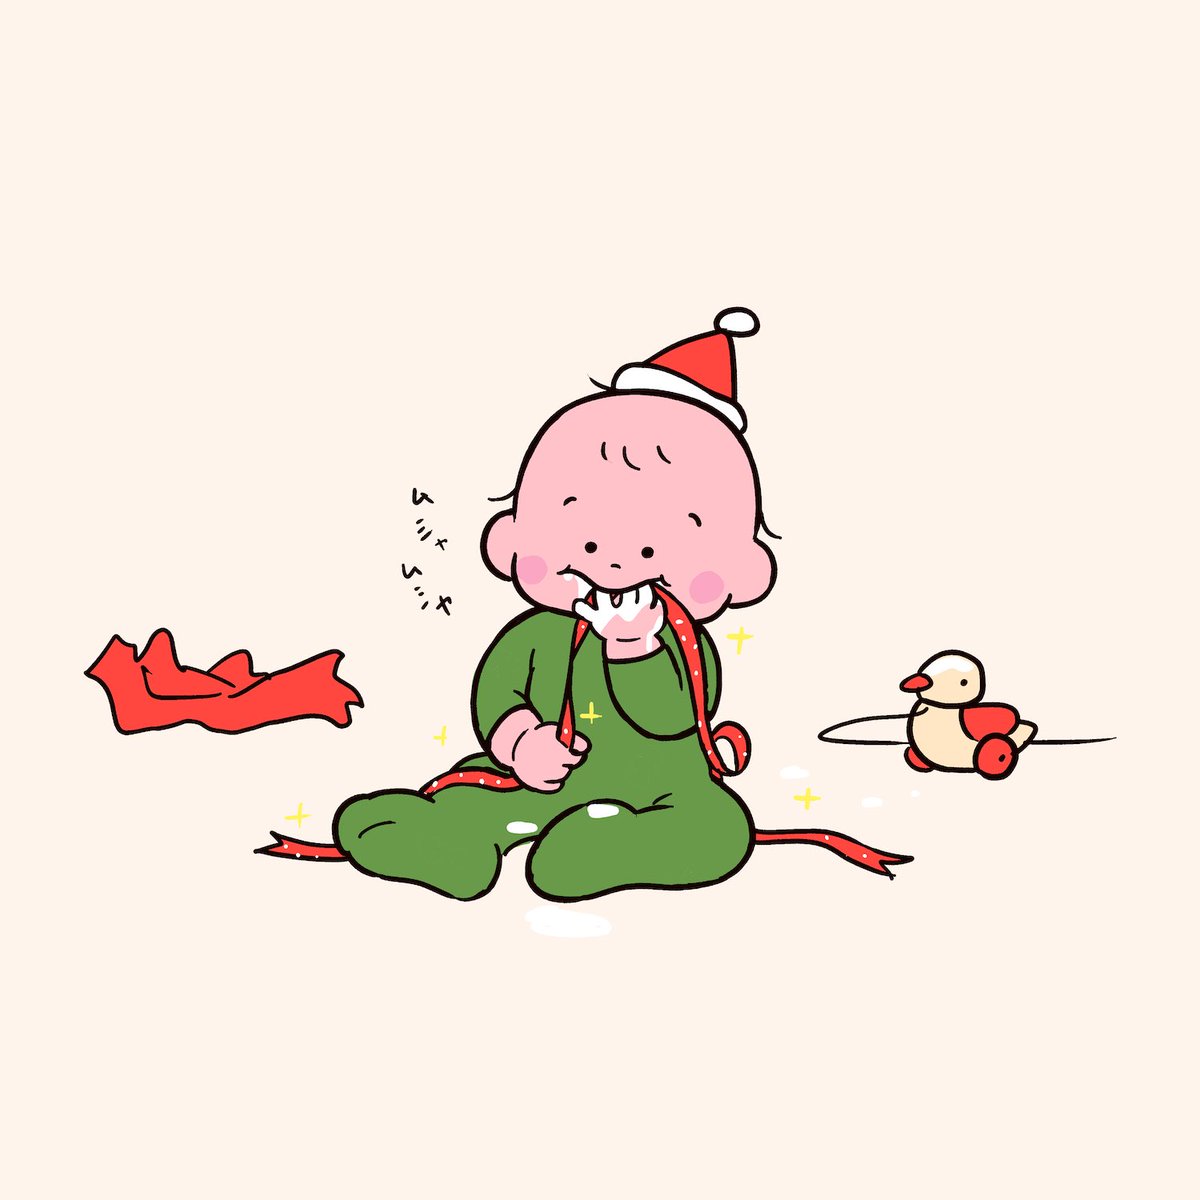 「はじめてのクリスマスプレゼント
紐の方を気にいる🎁✨ 」|たろう(な気分)のイラスト